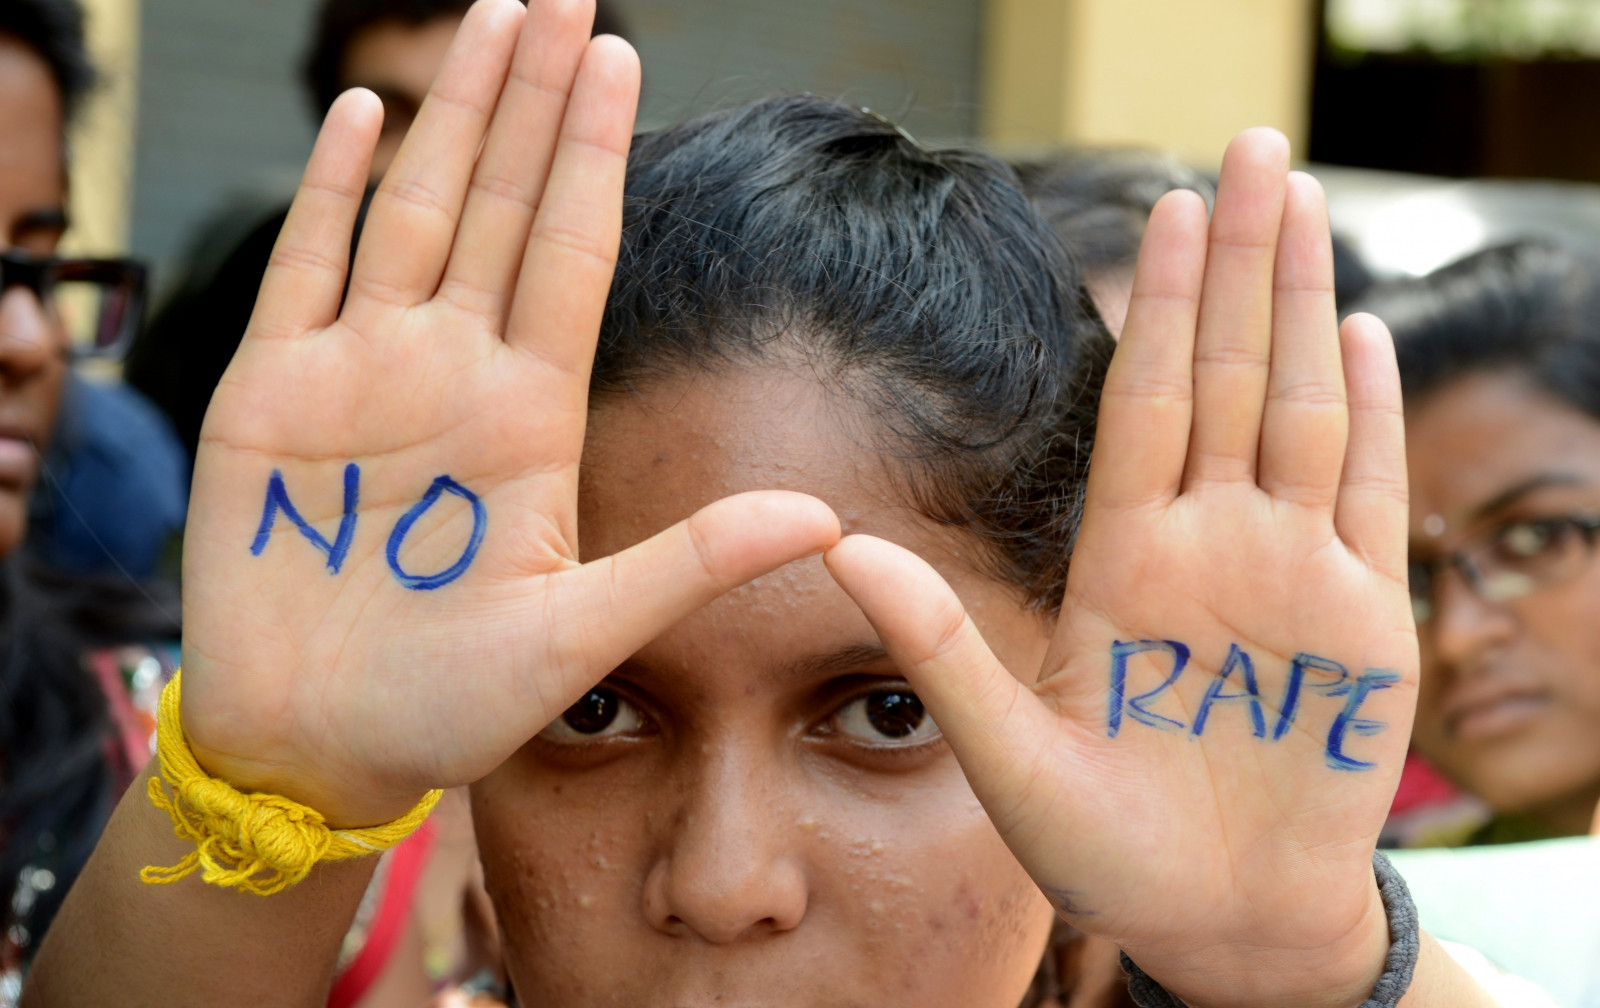 Θύματα βιασμού έπεσαν πέντε ακτιβίστριες κατά του τράφικινγκ στην Ινδία